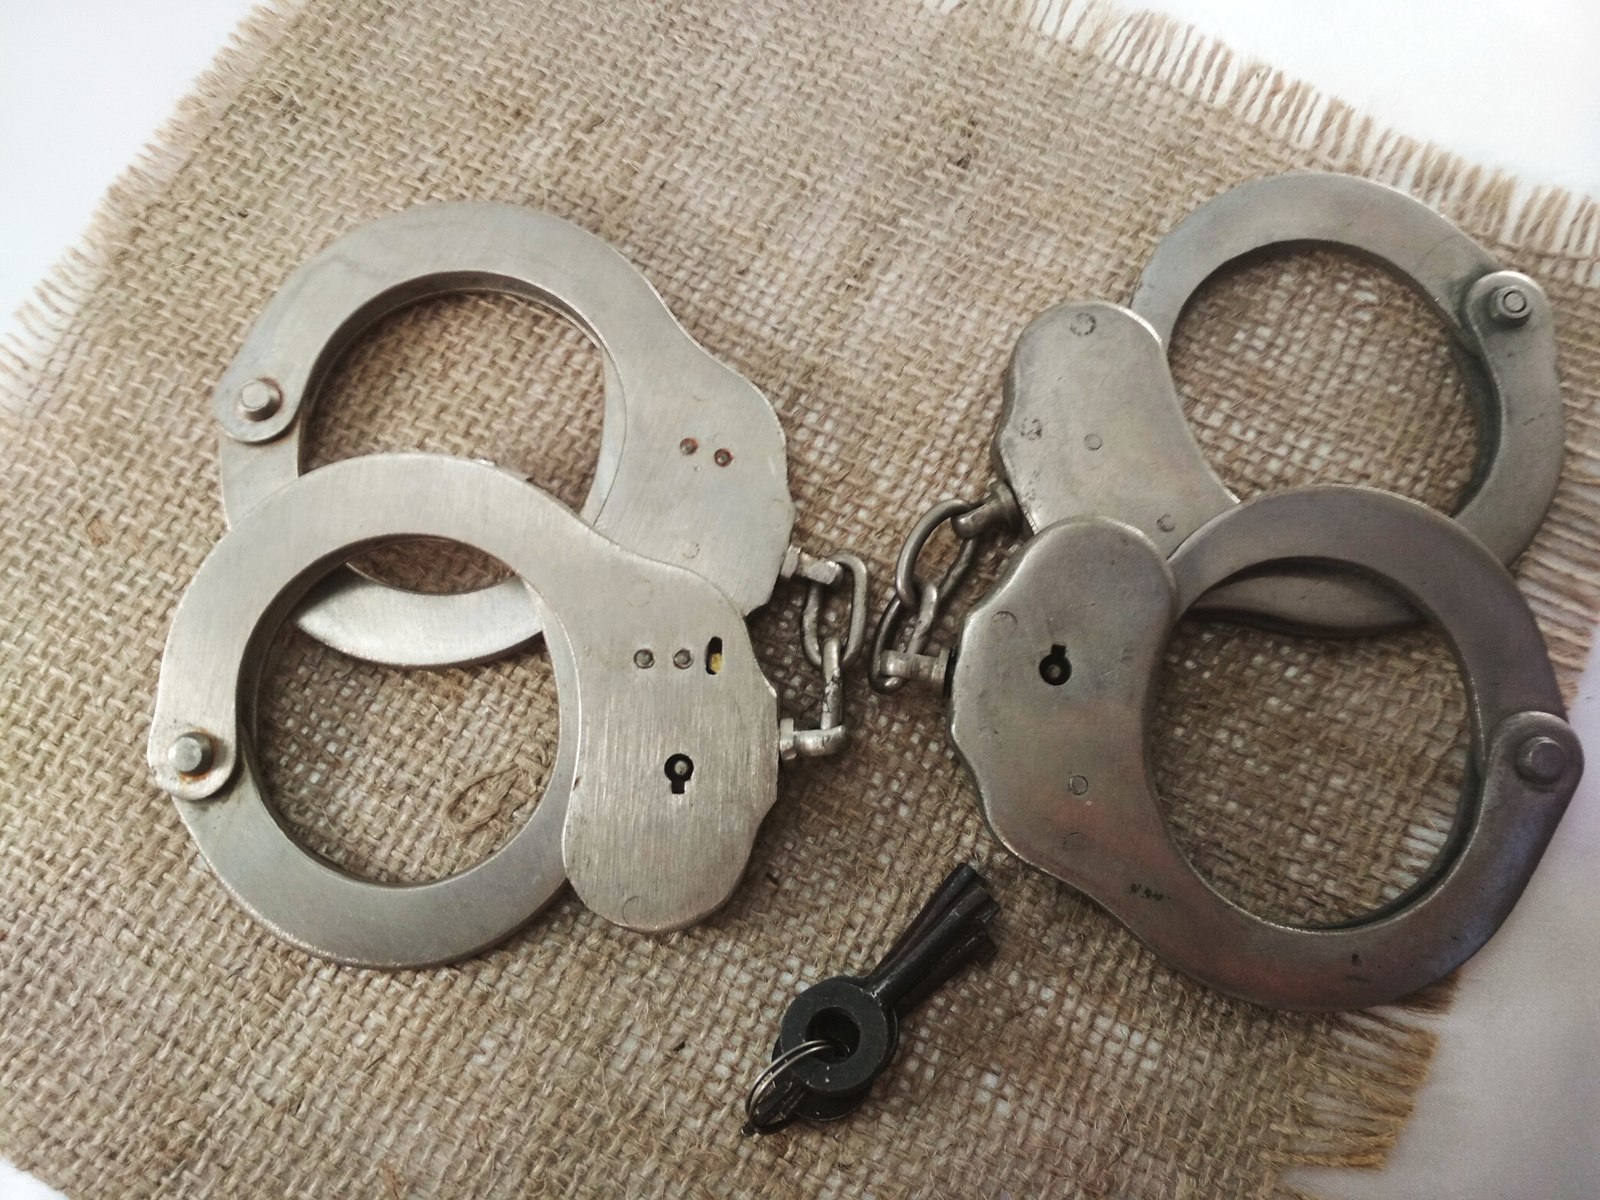 Полицейские наручники | Пикабу